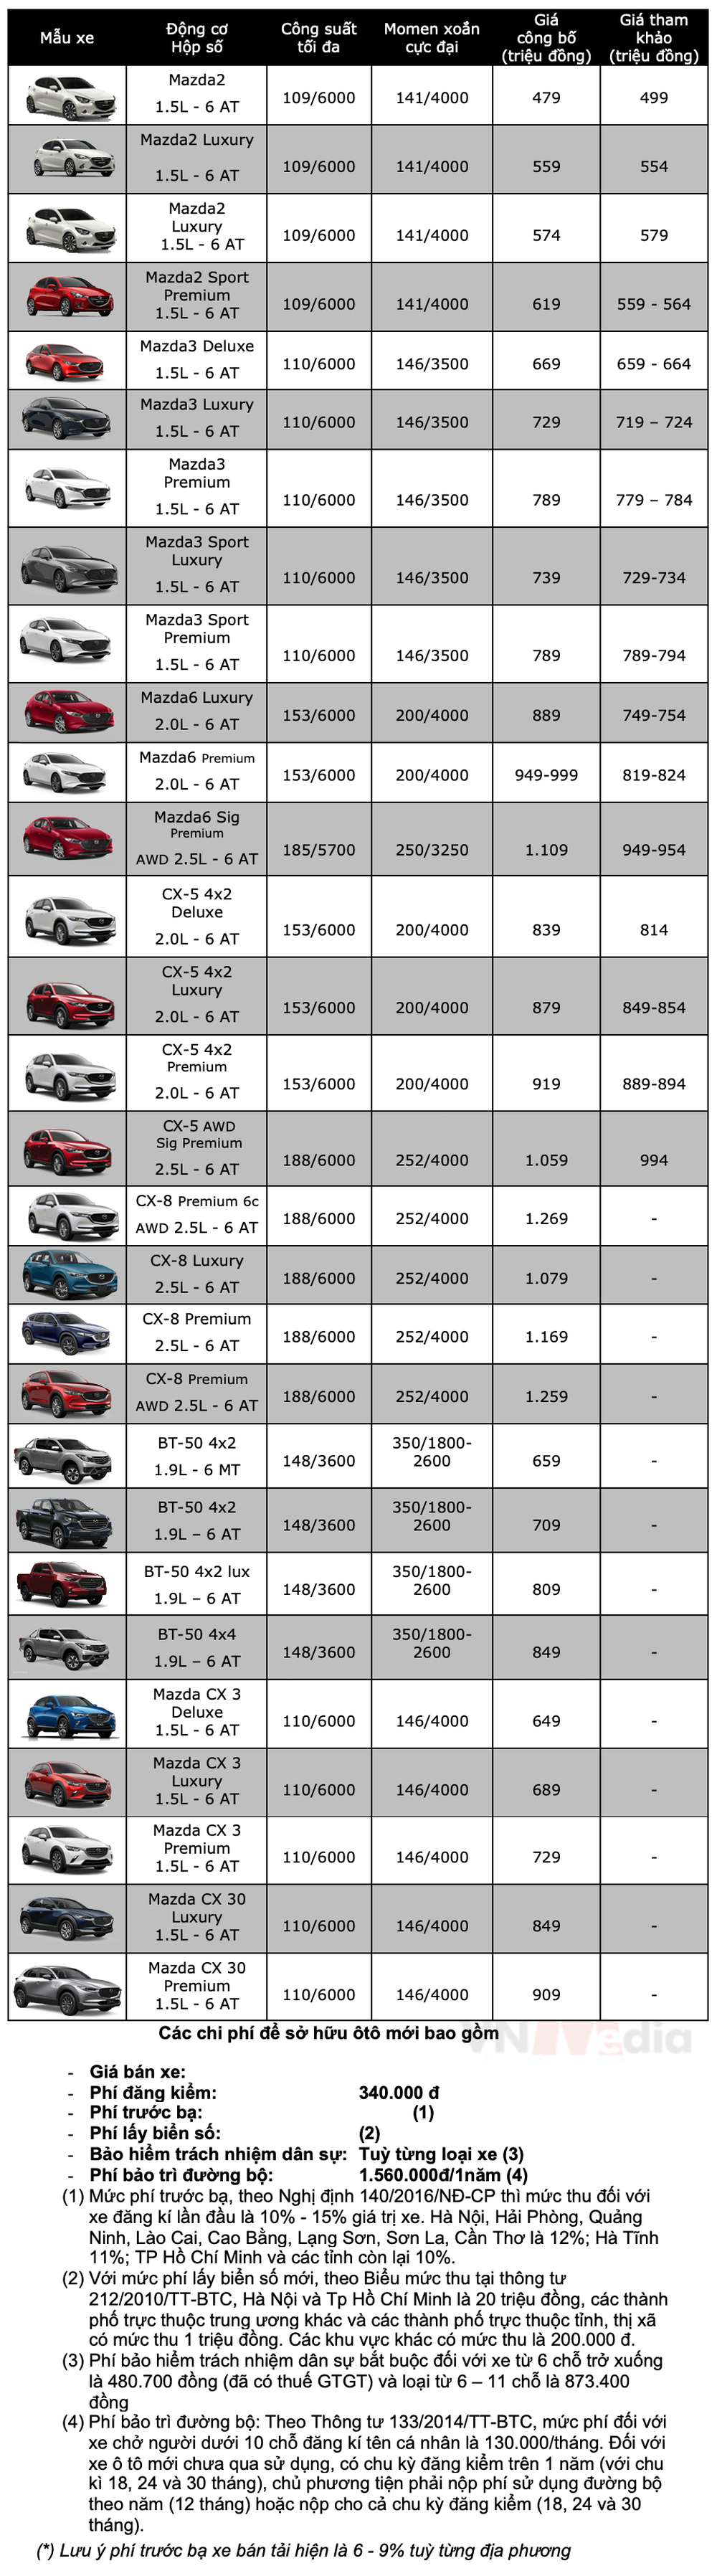 Bảng giá xe Mazda tháng 12: Mazda3 được ưu đãi 55 triệu đồng - Ảnh 2.